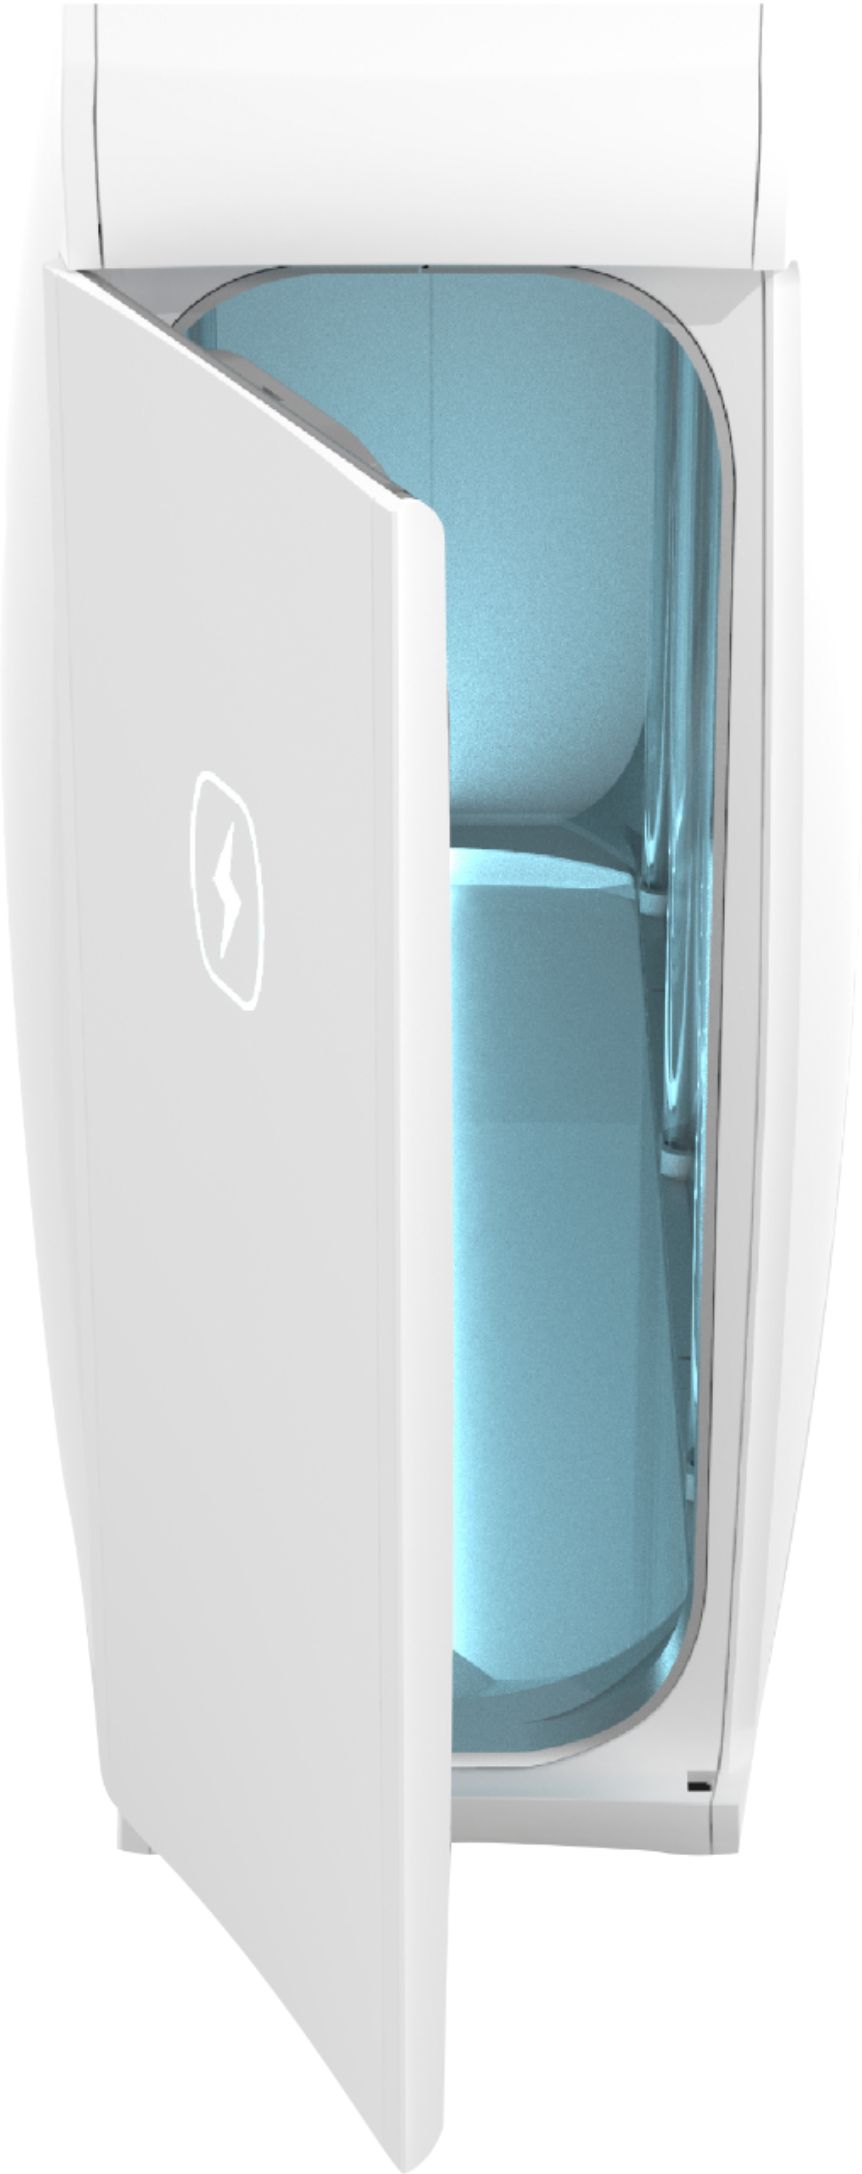 Phonesoap HomeSoap White UV Light Sanitizer